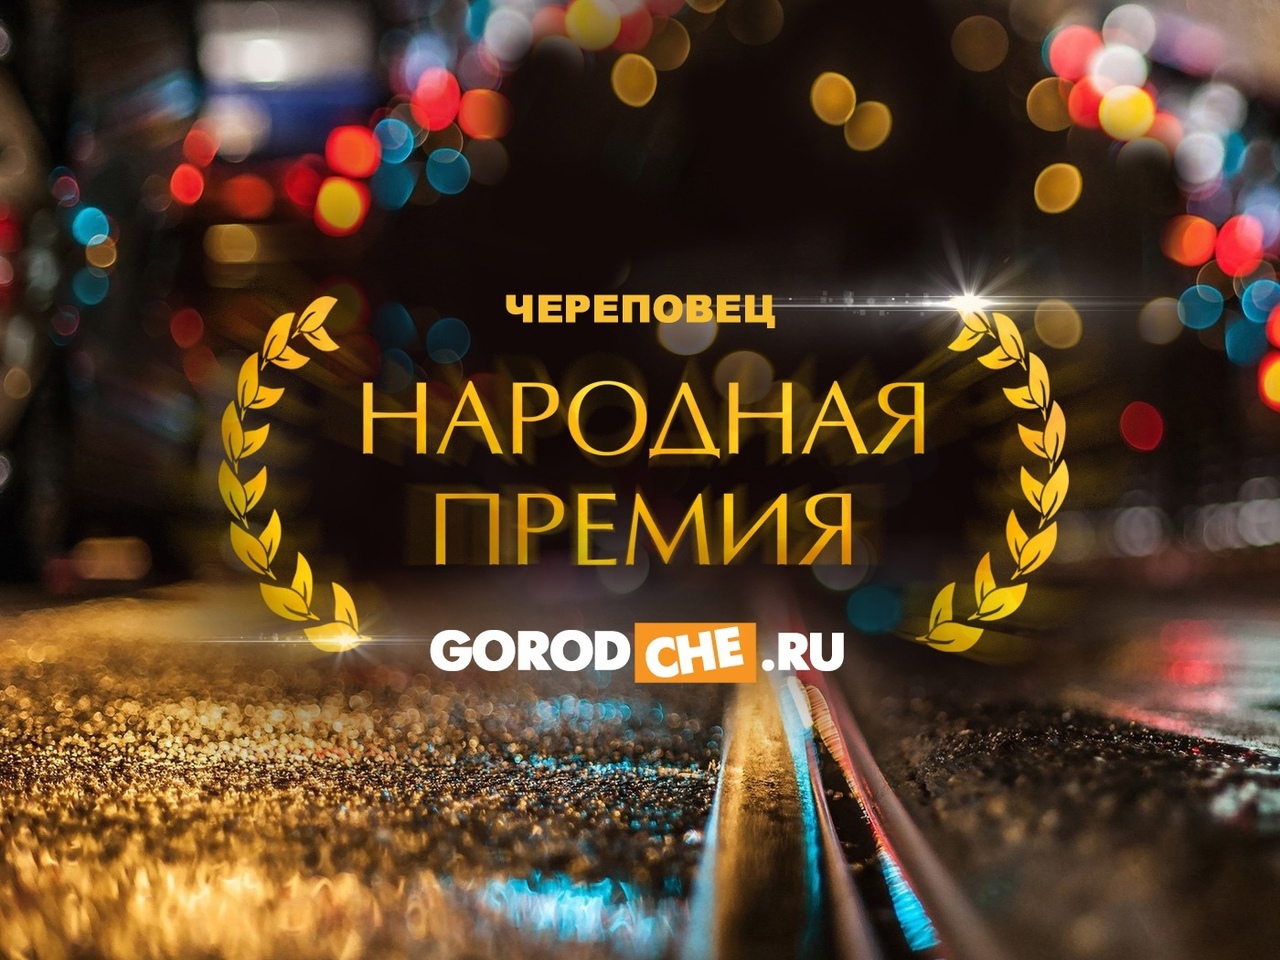 Народная премия Gorodche.ru 2021: официальные партнёры